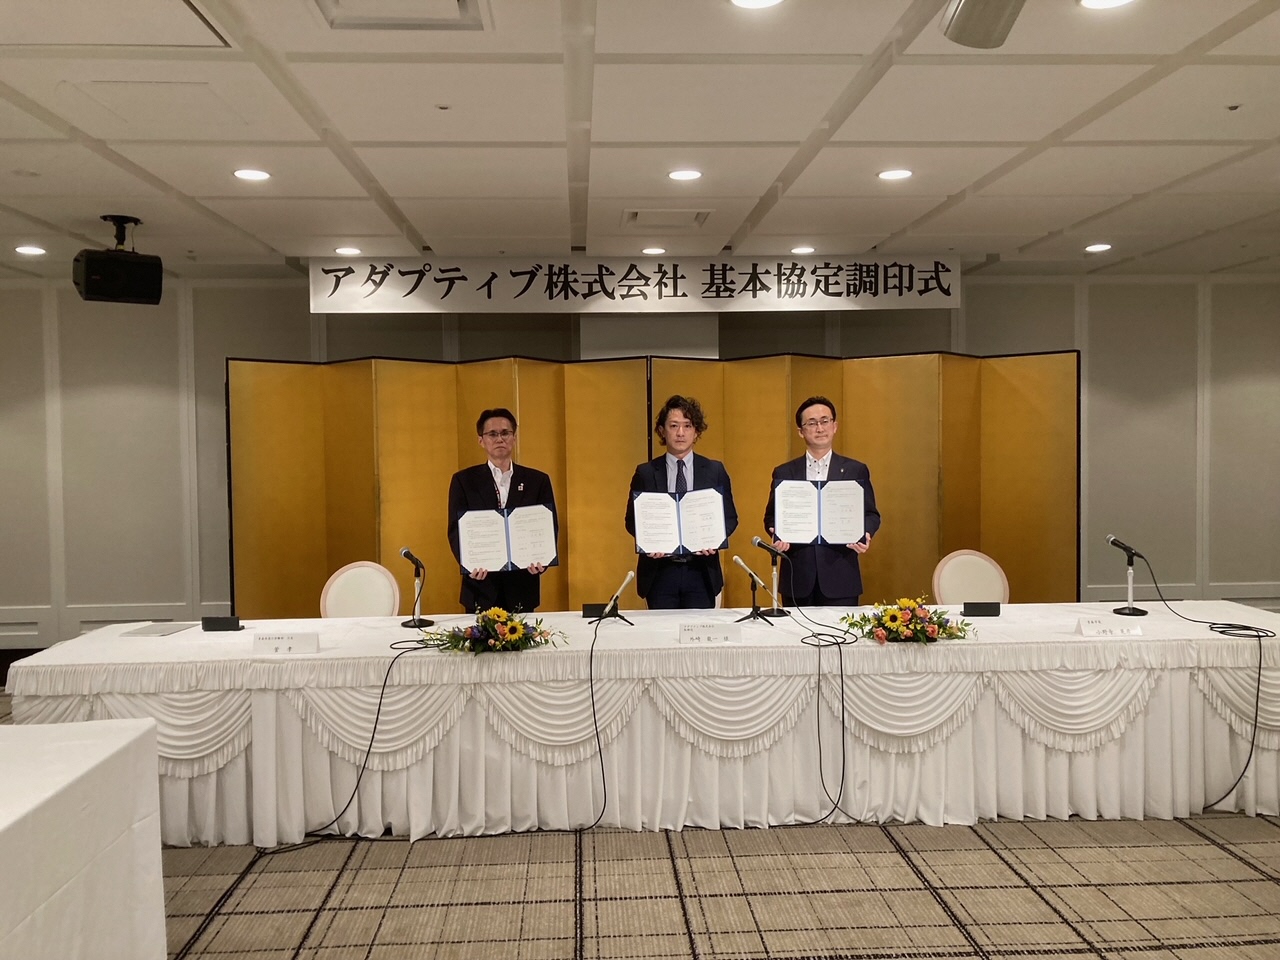 左から青森県商工労働部菅次長、外崎取締役、小野寺市長